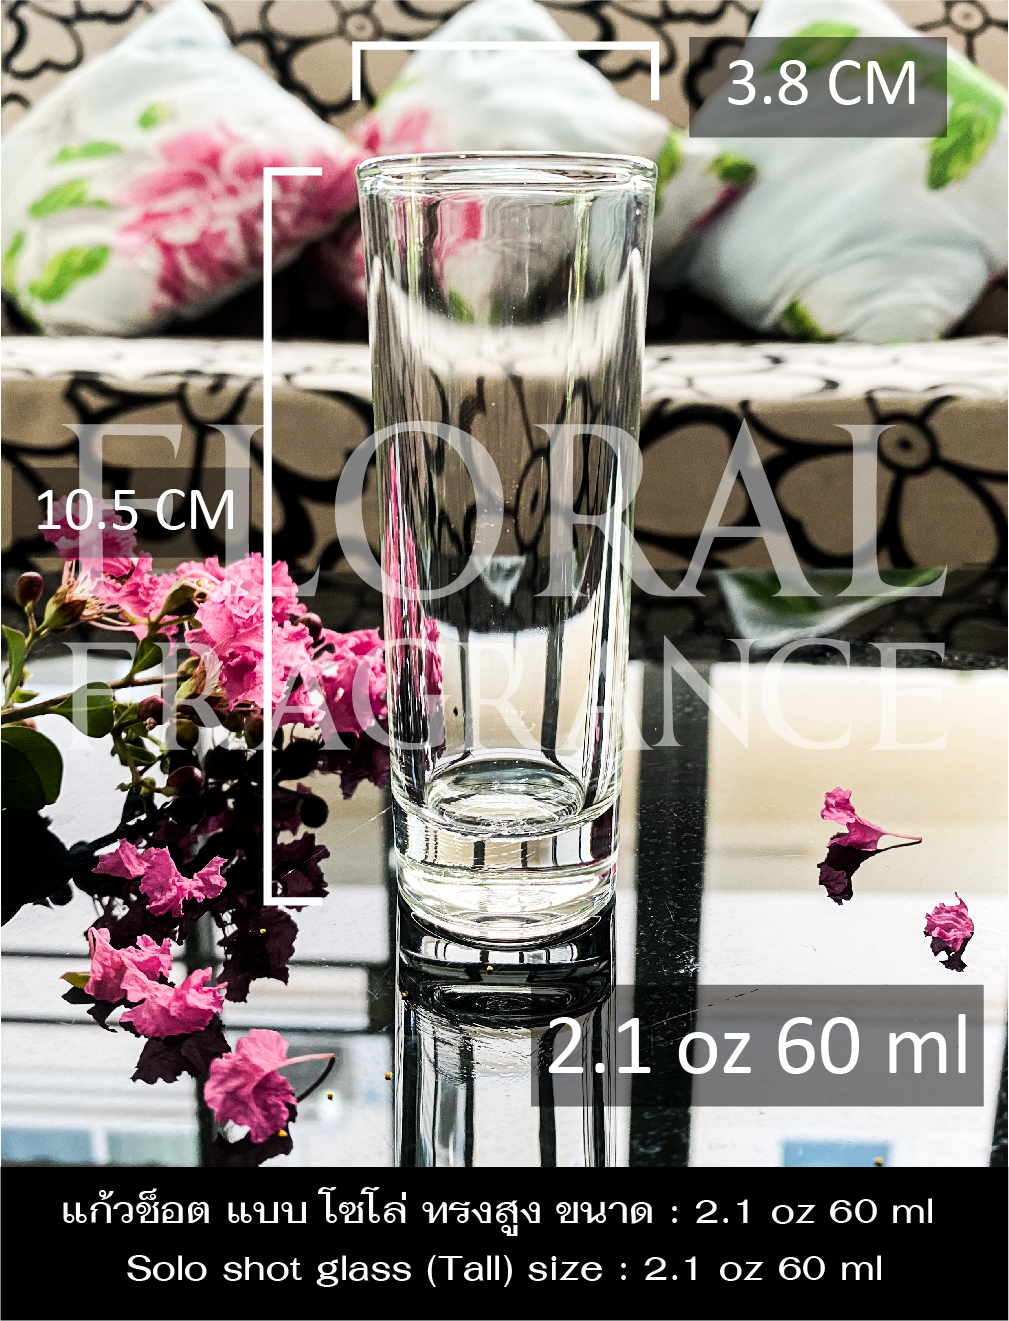 แก้วช็อต แบบโซโล่ ทรงสูง ขนาด 2.1 oz 60 ml Solo Shot Glass แก้วเป๊ก แก้วทำเทียน แก้วเทียนหอม แก้วเหล้า แก้วน้ำ พร้อมส่ง (Lucky Glass)